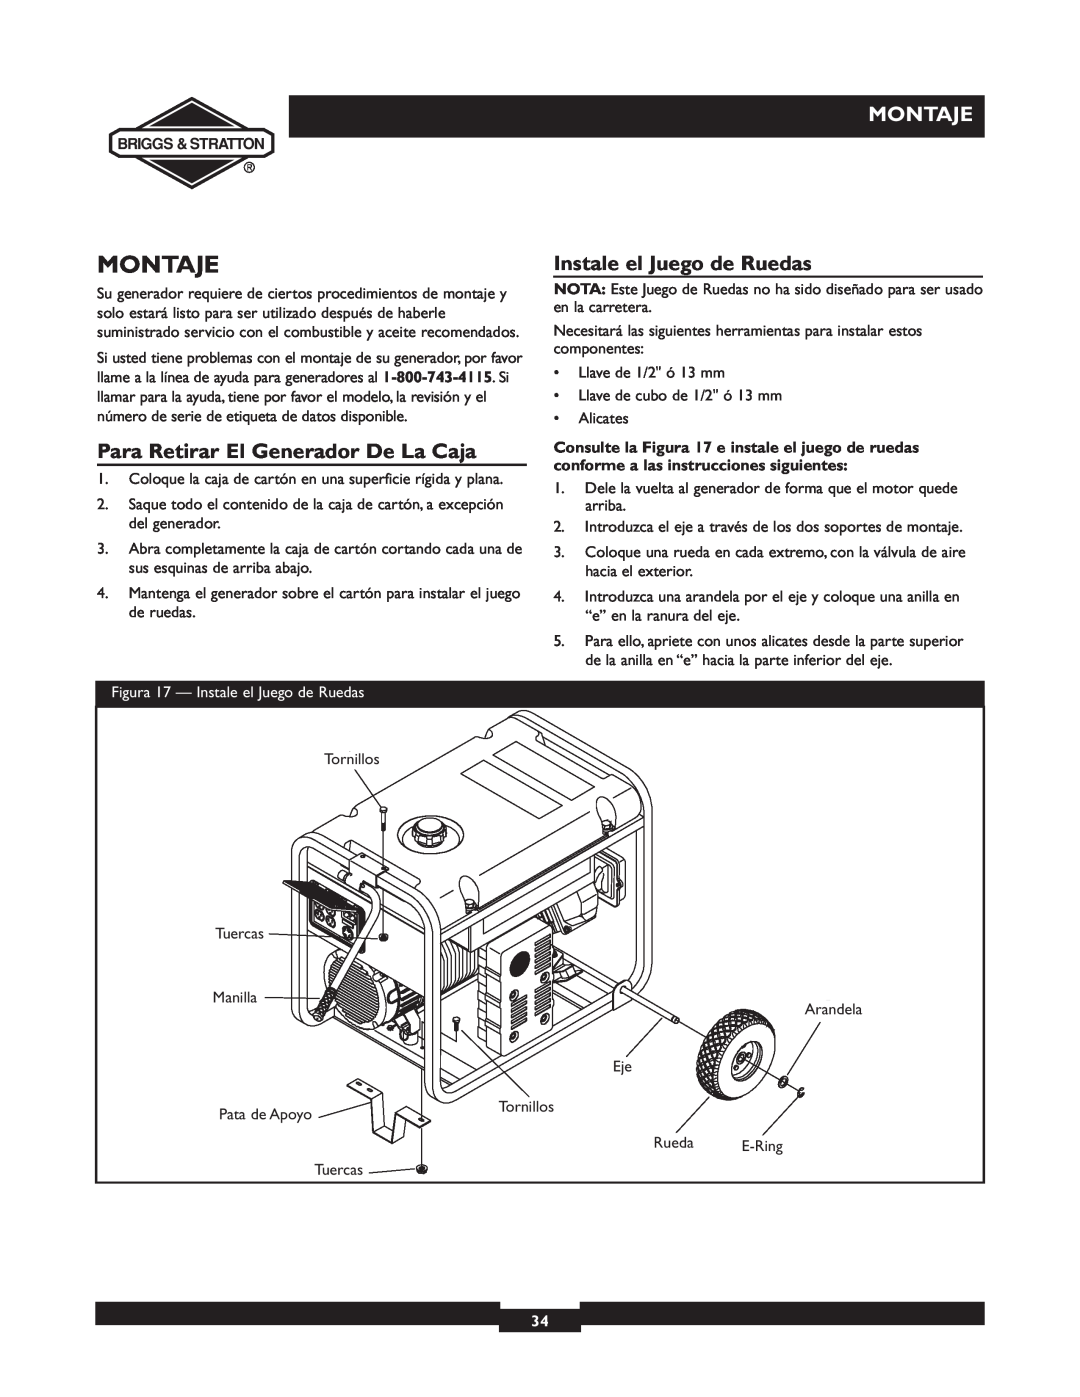 Briggs & Stratton 30238 owner manual Montaje, Instale el Juego de Ruedas, Para Retirar El Generador De La Caja 